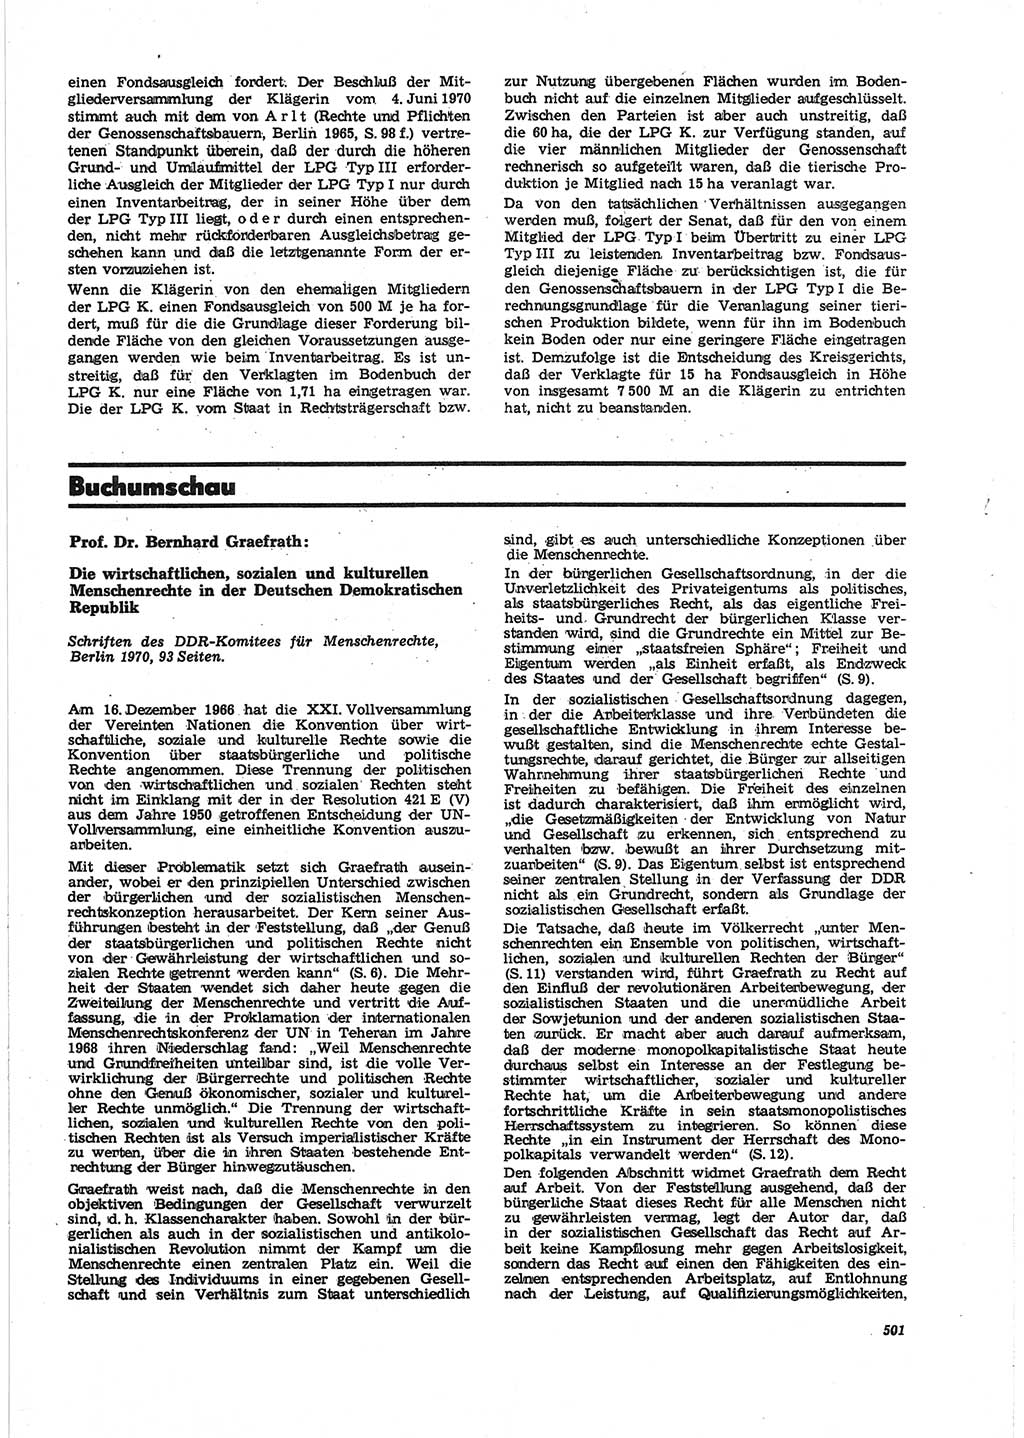 Neue Justiz (NJ), Zeitschrift für Recht und Rechtswissenschaft [Deutsche Demokratische Republik (DDR)], 25. Jahrgang 1971, Seite 501 (NJ DDR 1971, S. 501)